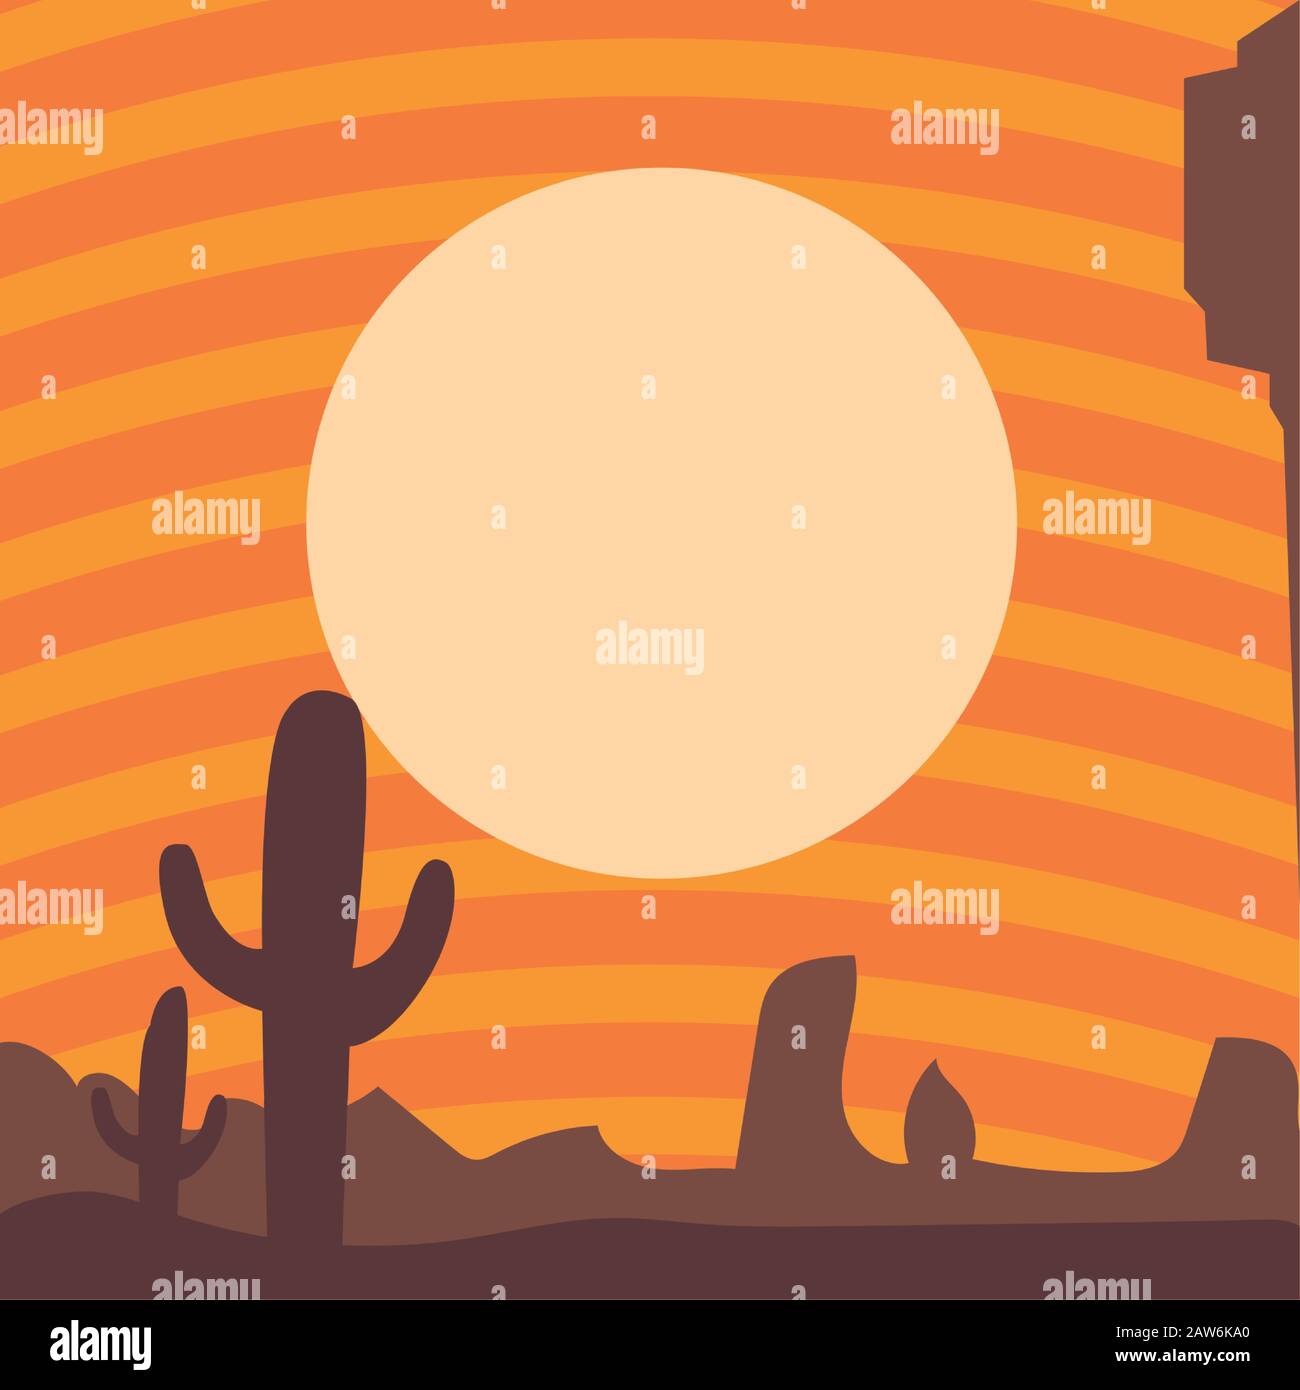 australian landscape, card of desert landscape vector illustration design Stock Vector